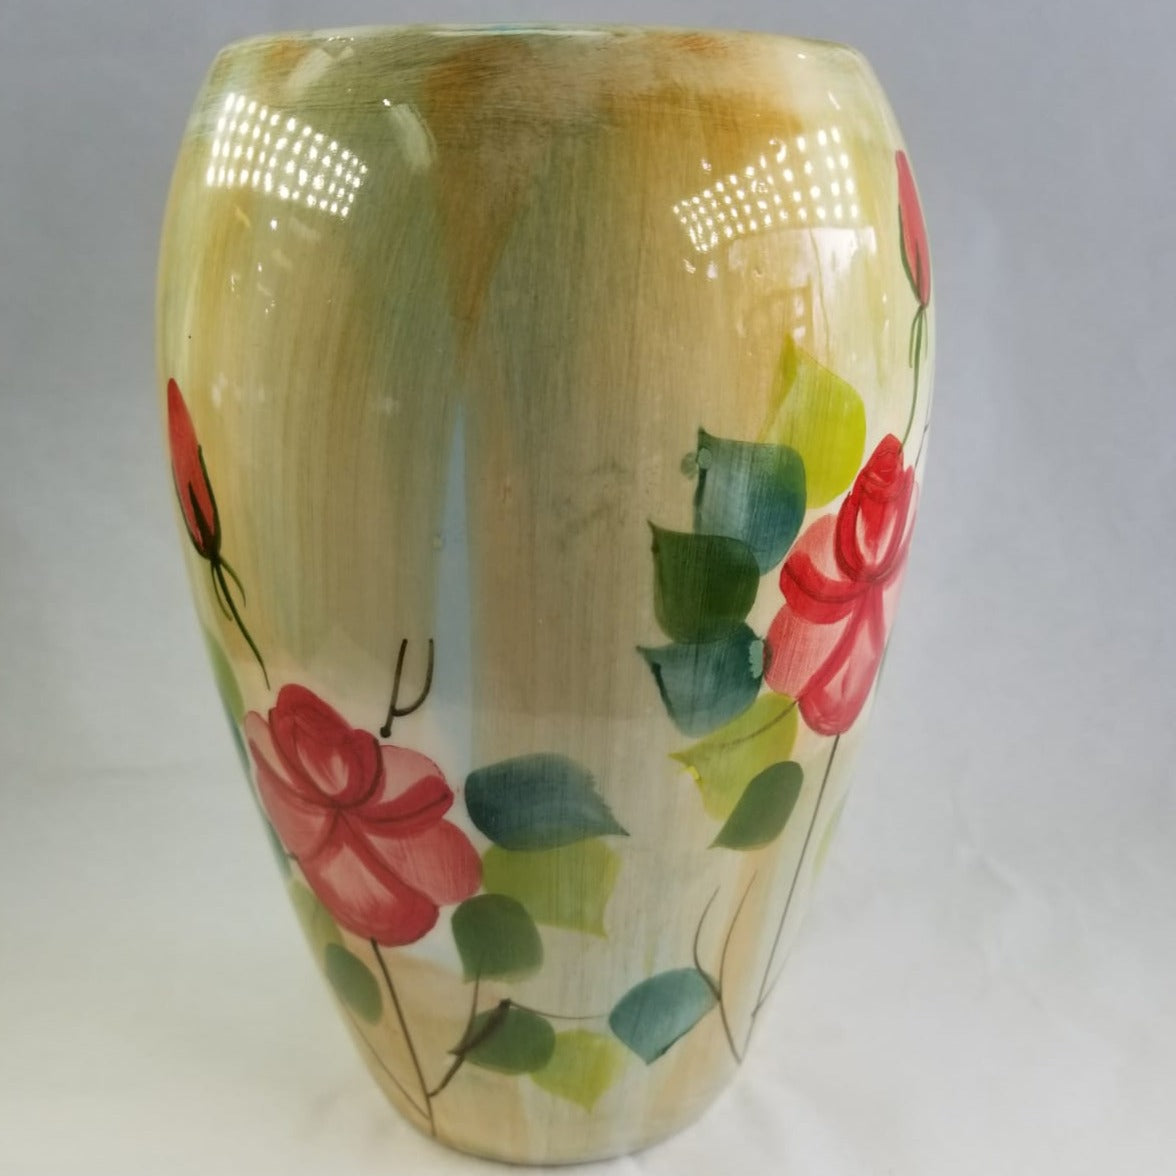 Red Flower Ceramic Vase - HighTouch 